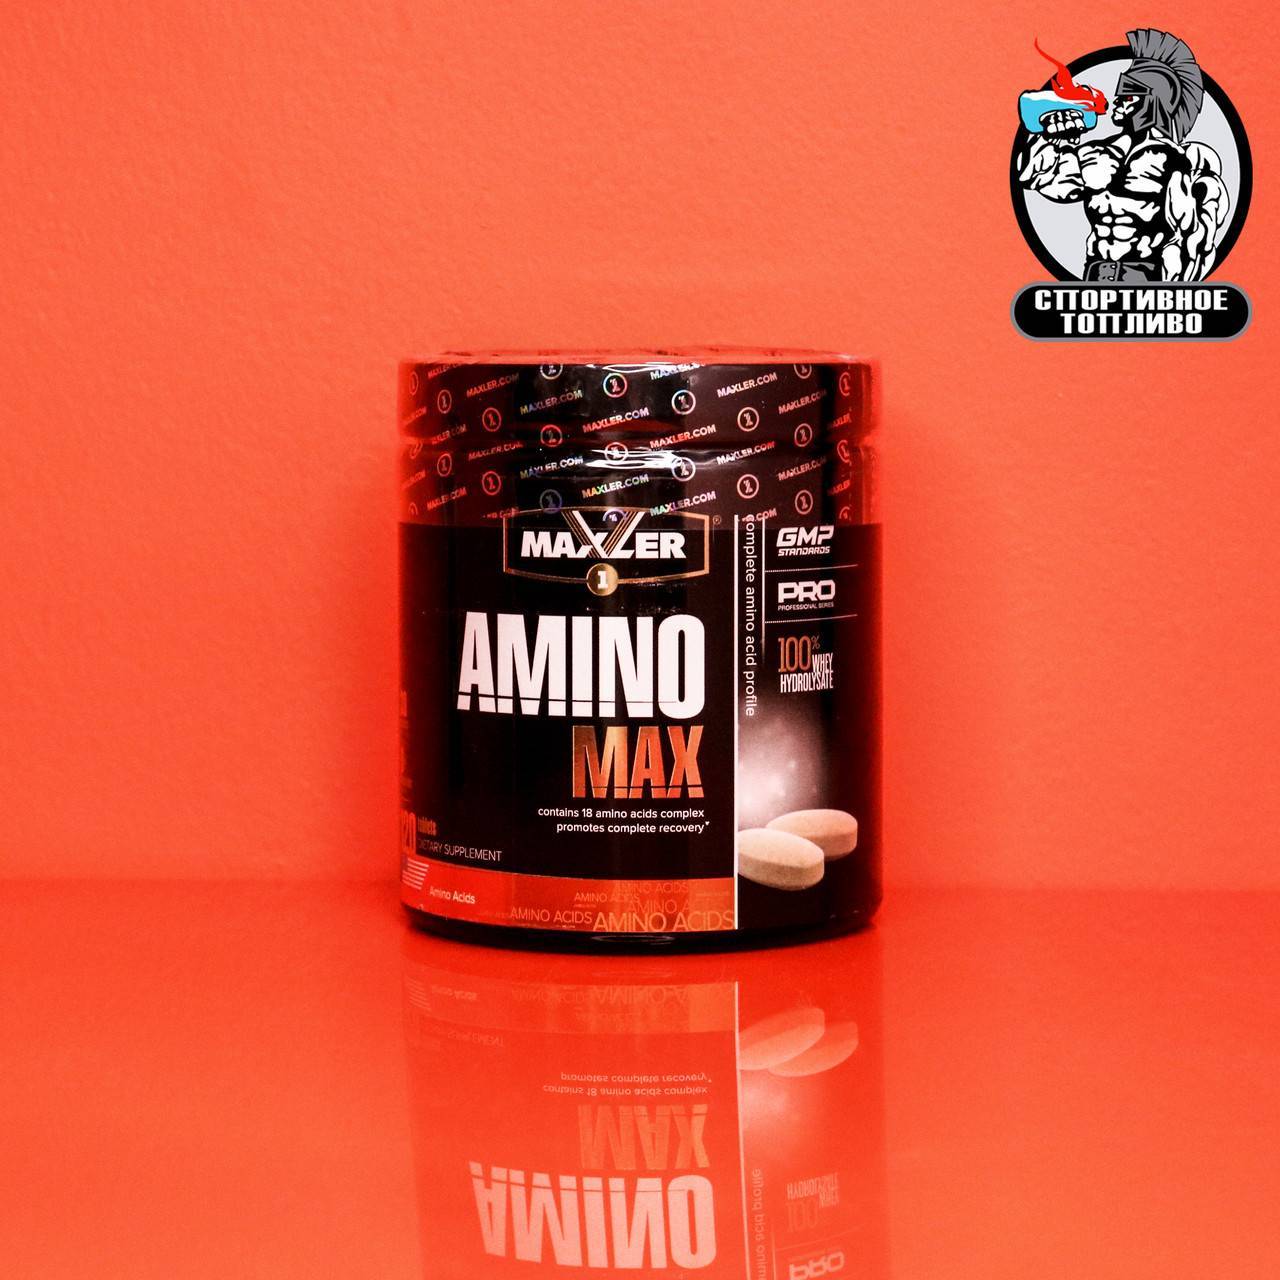 Amino magic fuel от maxler: как принимать, состав и отзывы